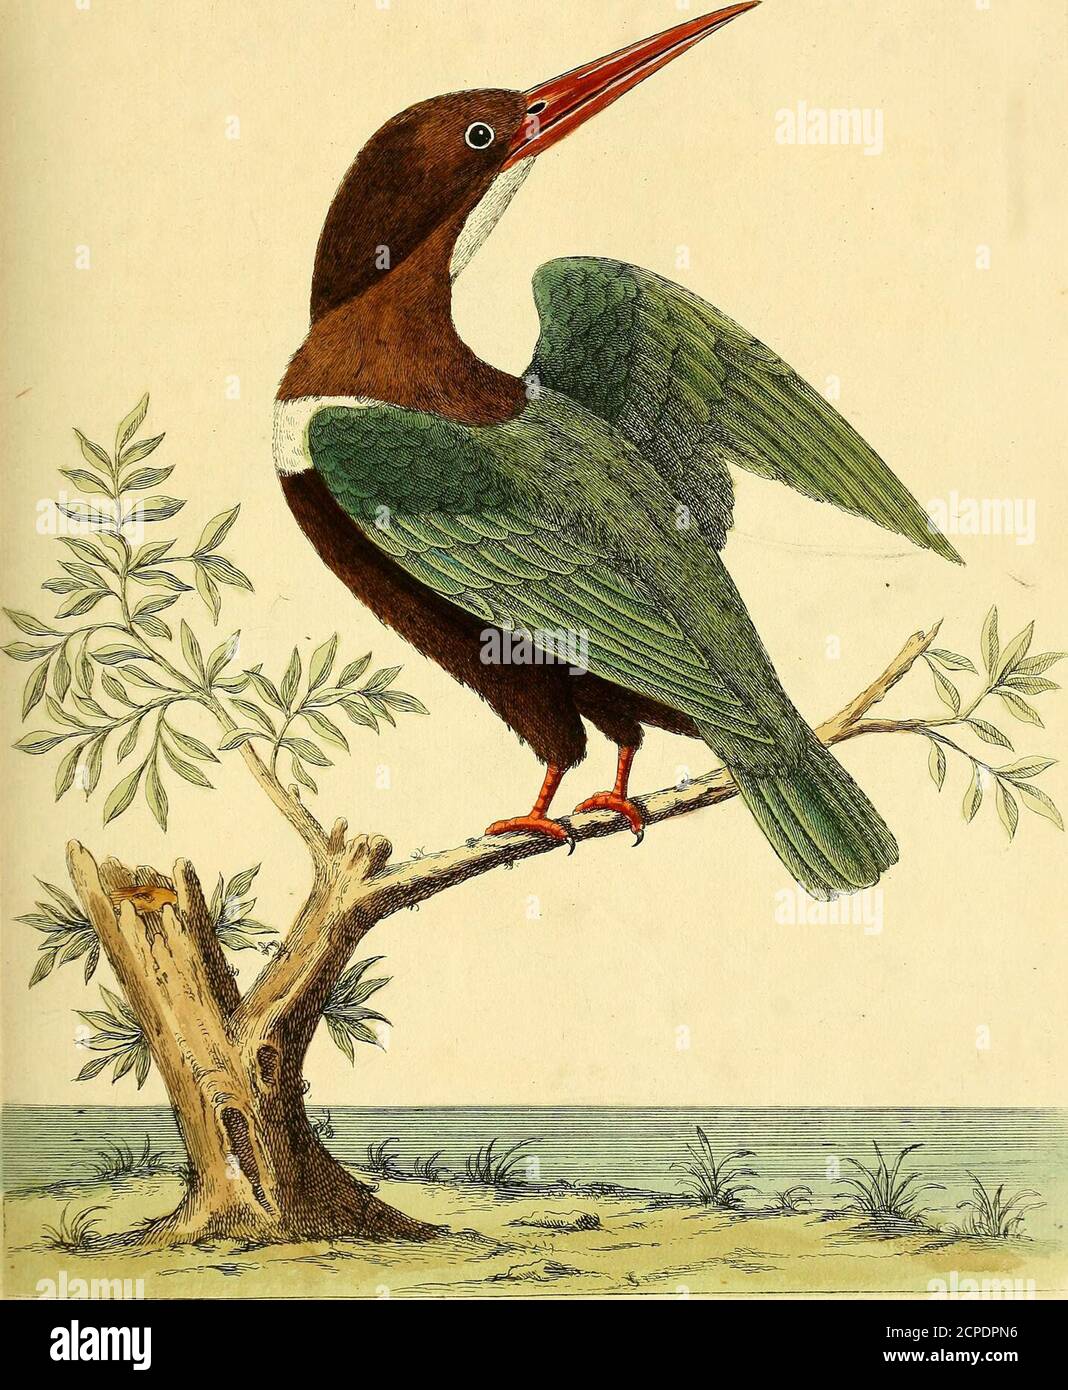 . Historia natural de las aves : ilustrado con cien y un placas de cobre, curiosamente grabado de la vida . El 2&gt;. Yruy,JM/i/r/ia -Jun?fuAe. ('/eoyZO/r?UtrL l/)cl. Jju/a 27. Lyj .d.. Foto de stock